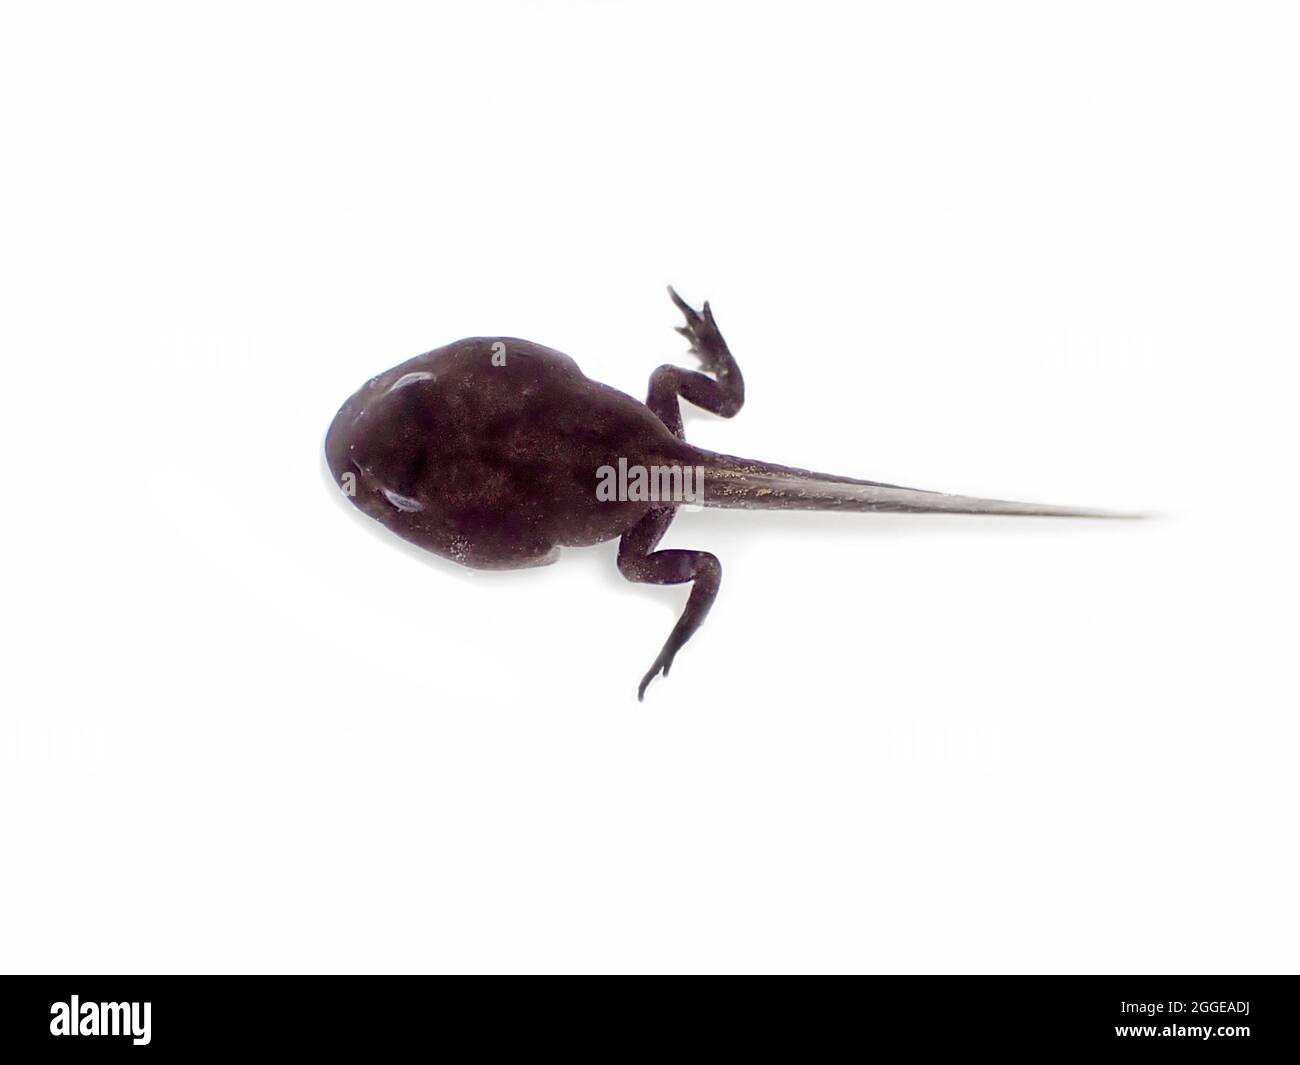 Gewöhnlicher Frosch (Rana temporaria), Kaulquappe mit entwickelten Hinterbeinen, die Vorderbeine sind in kleinen Hauttaschen und noch nicht sichtbar, Frühjahr, Berlin Stockfoto